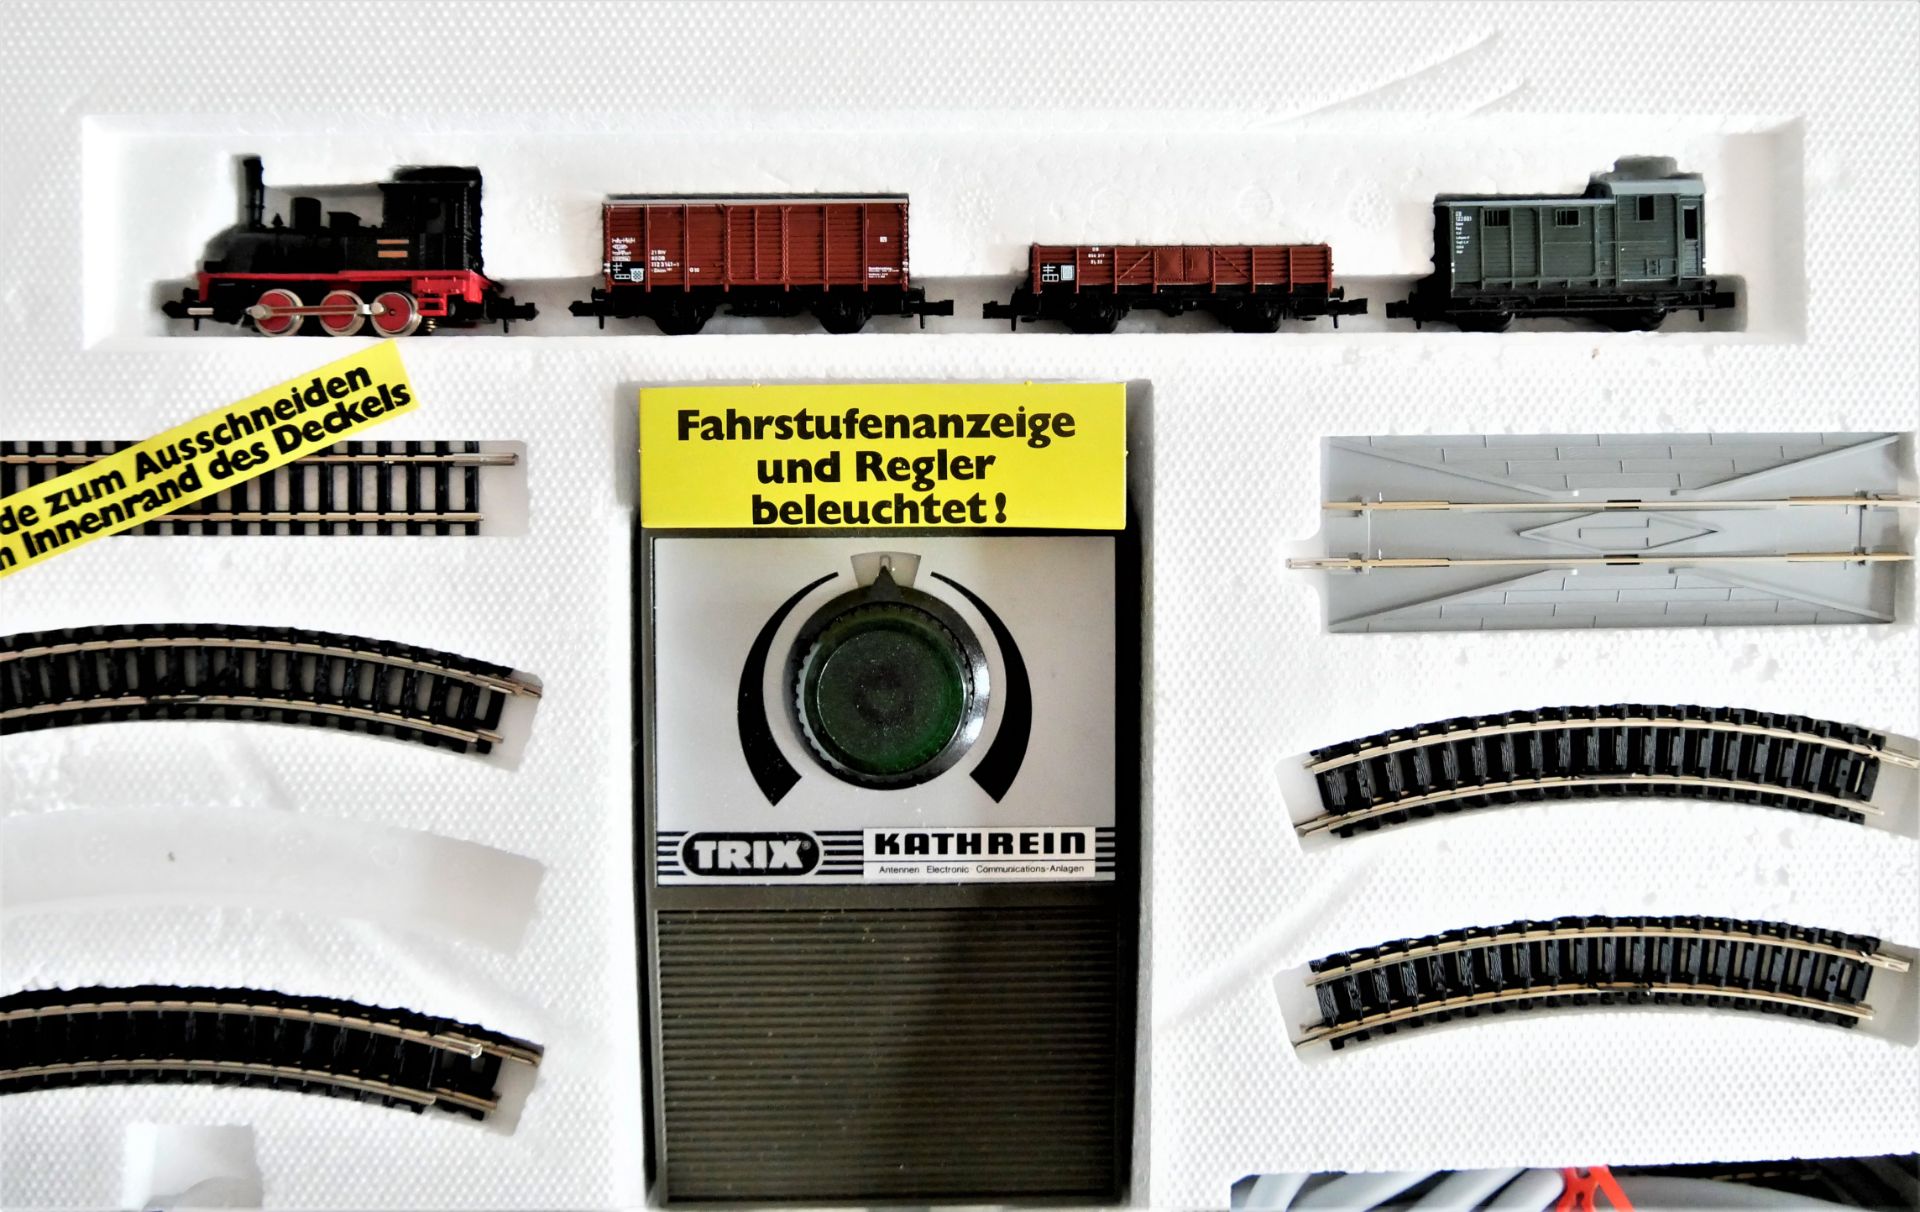 Minitrix Spur N Set 1033 mit Dampflok und 3 Güterwagen. Guter Zustand. - Image 3 of 4